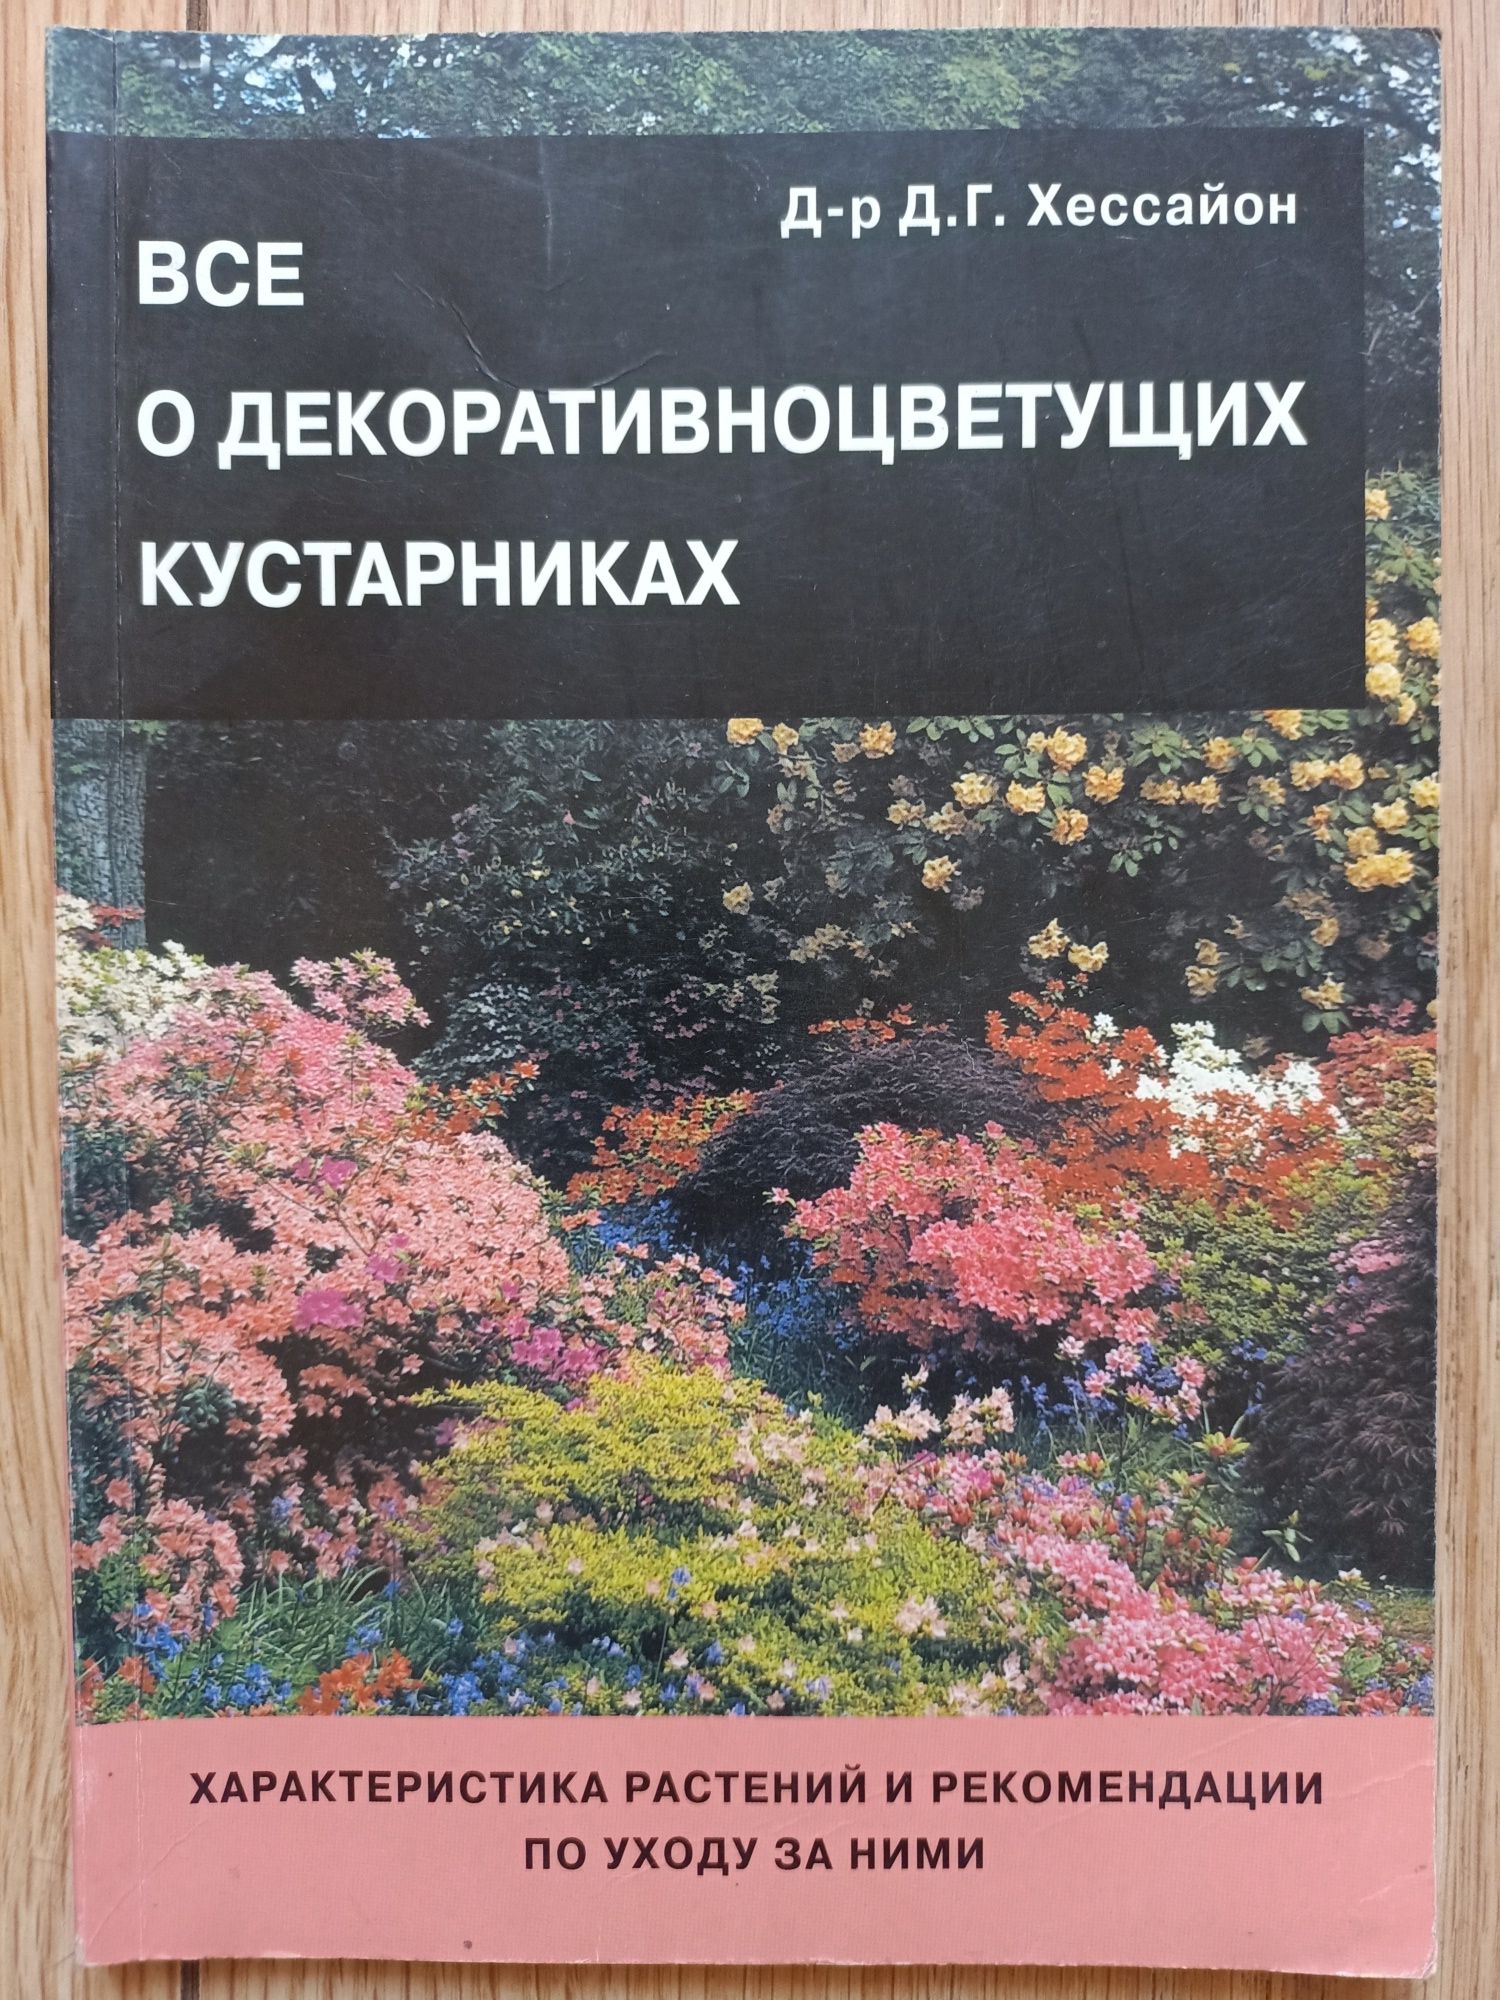 Книги о садоводстве